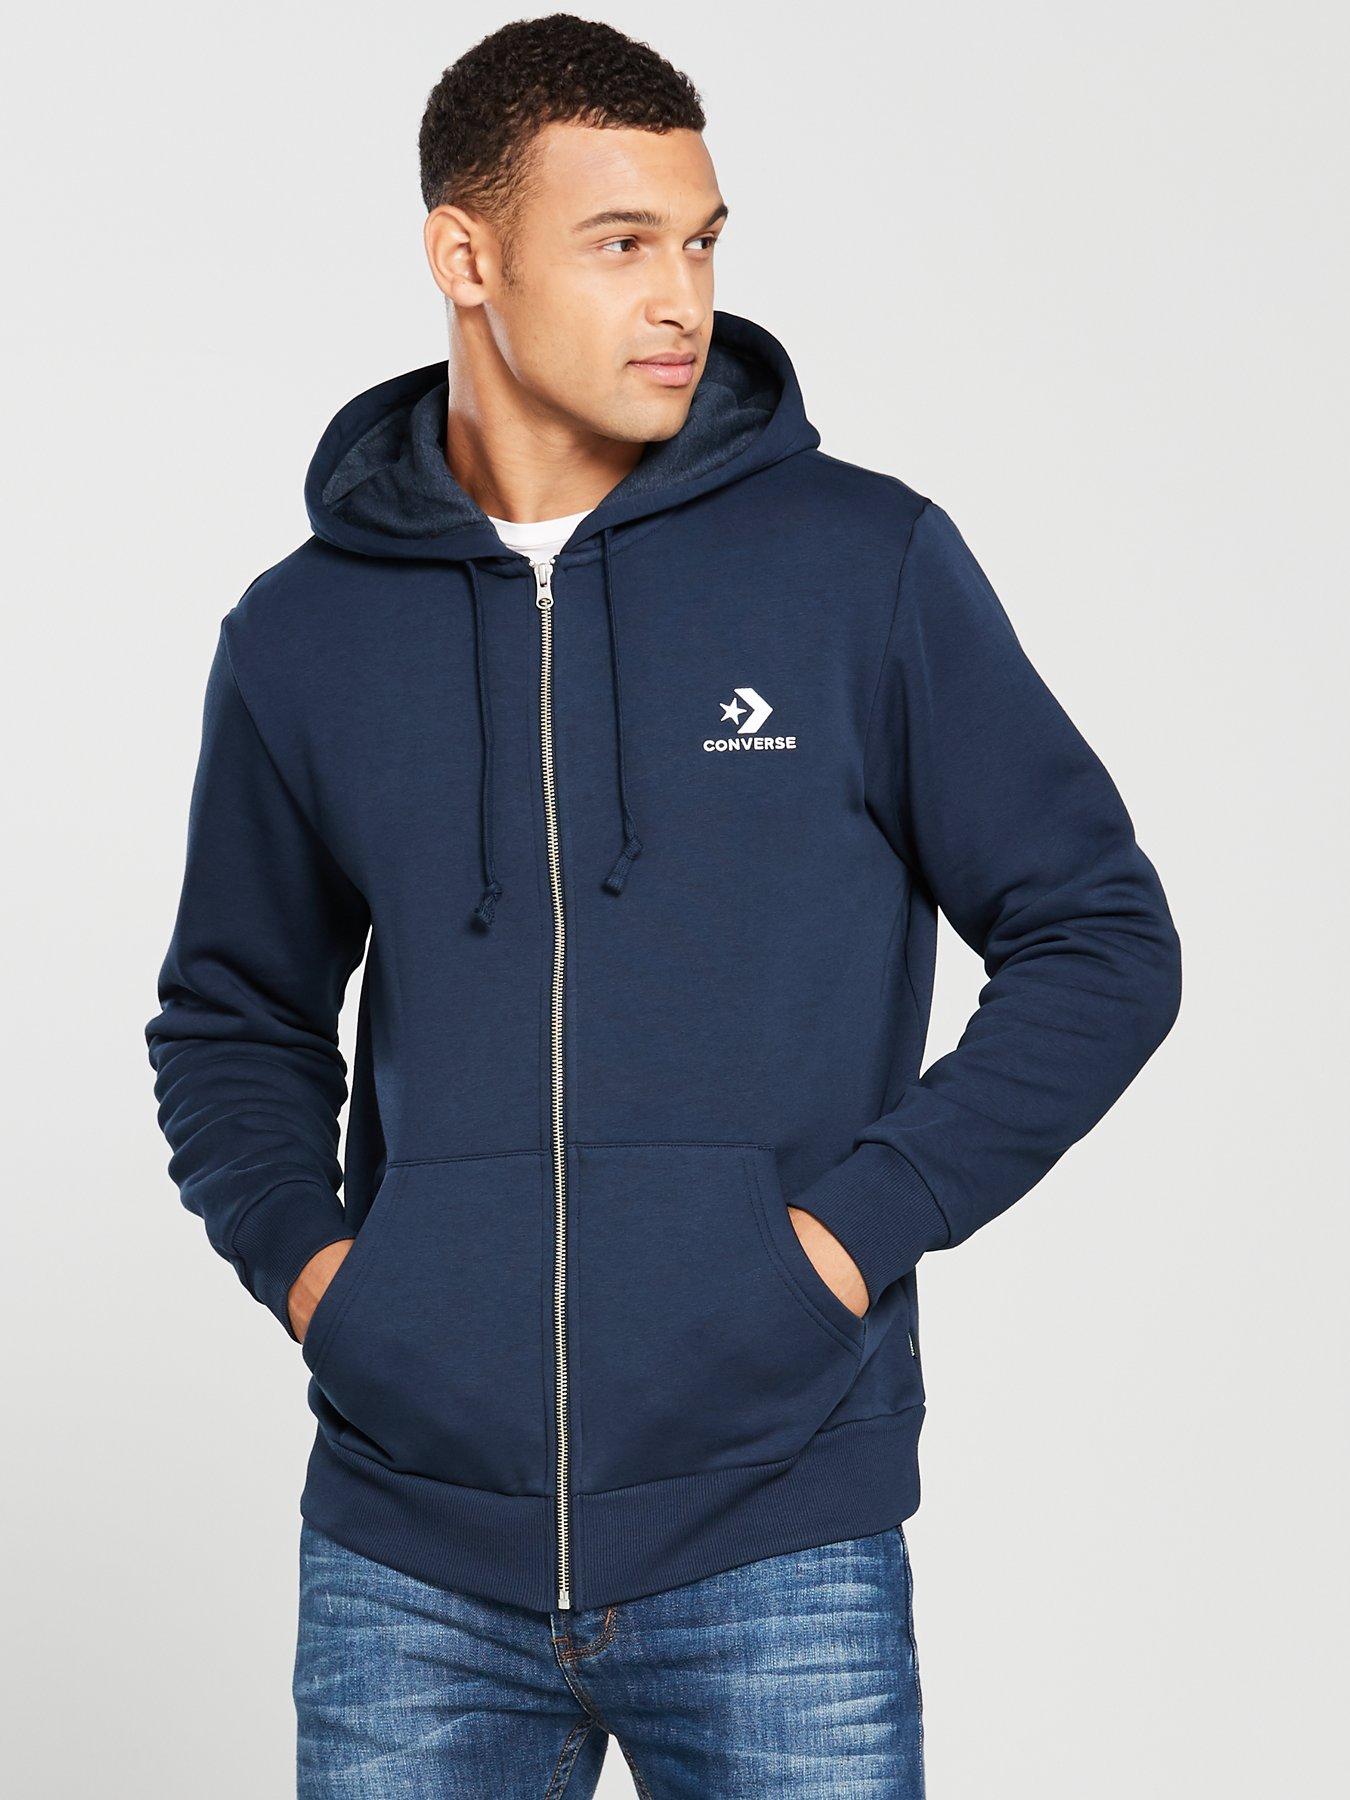 converse zip hoodie men's